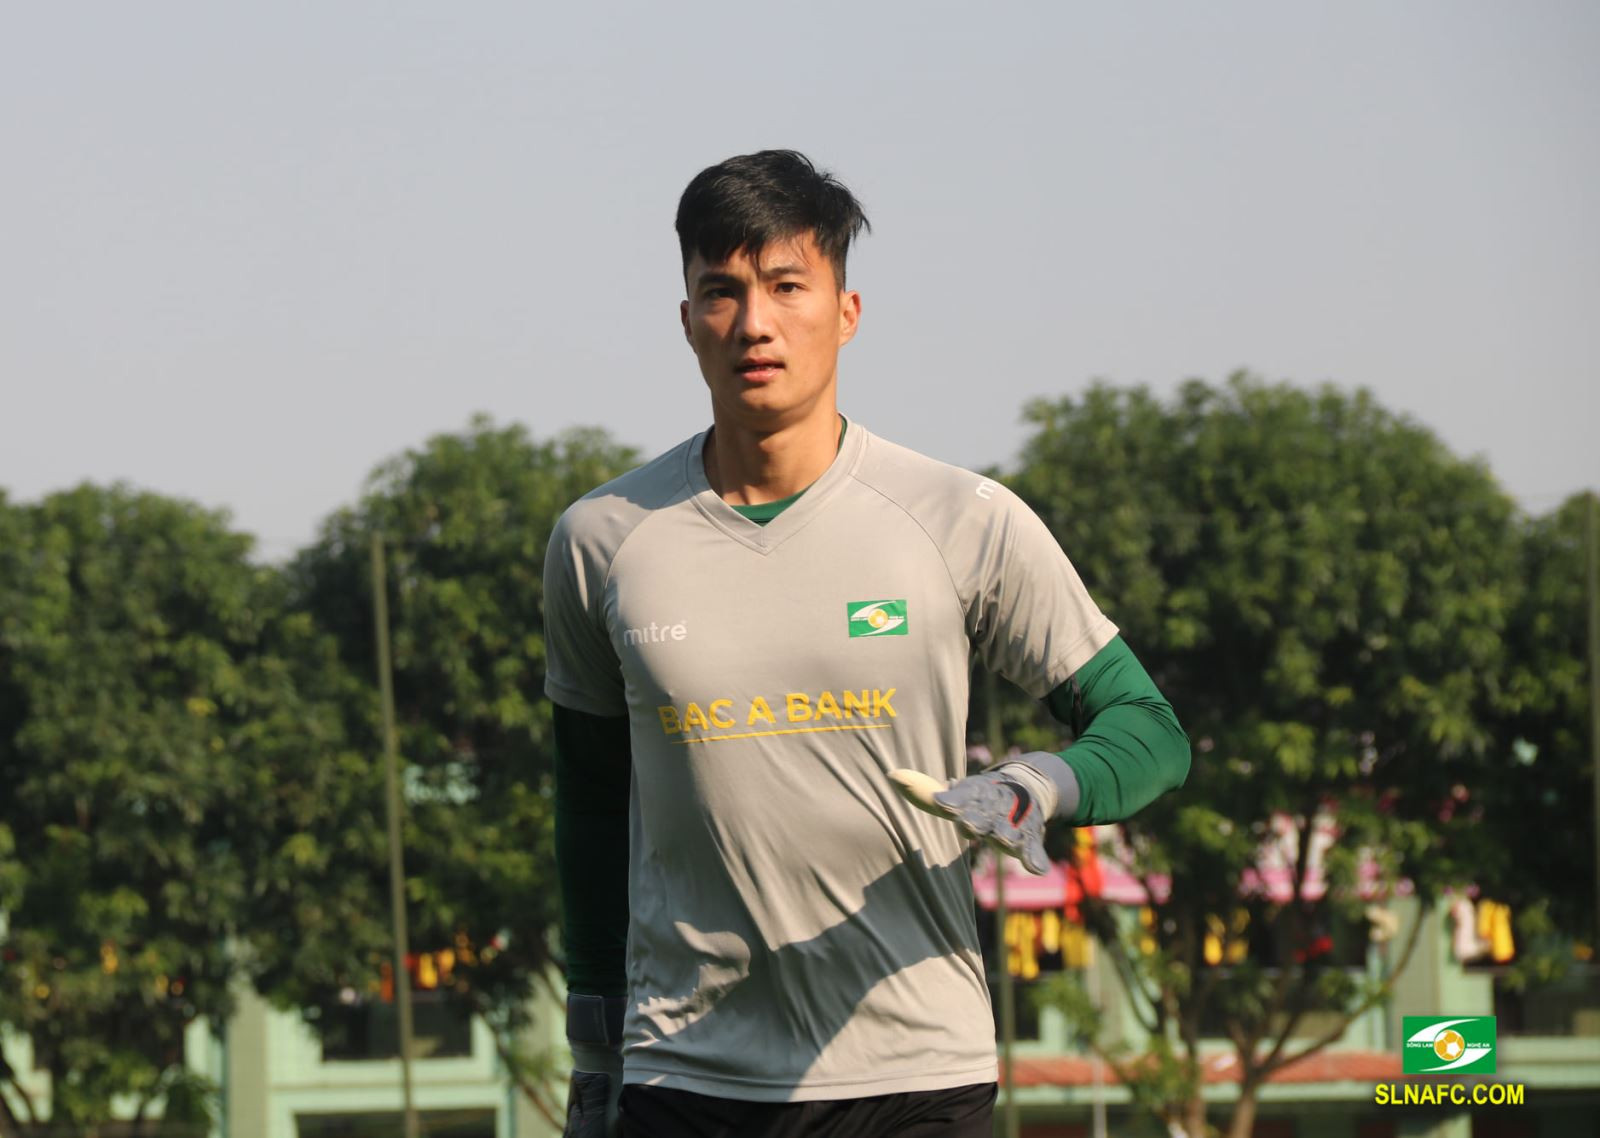 Ánh hào quang U23 châu Á đã lùi xa, giờ là lúc Văn Hoàng tận dụng cơ hội để tỏa sáng trong màu áo đội bóng quê hương SLNA - Ảnh: SLNA FC